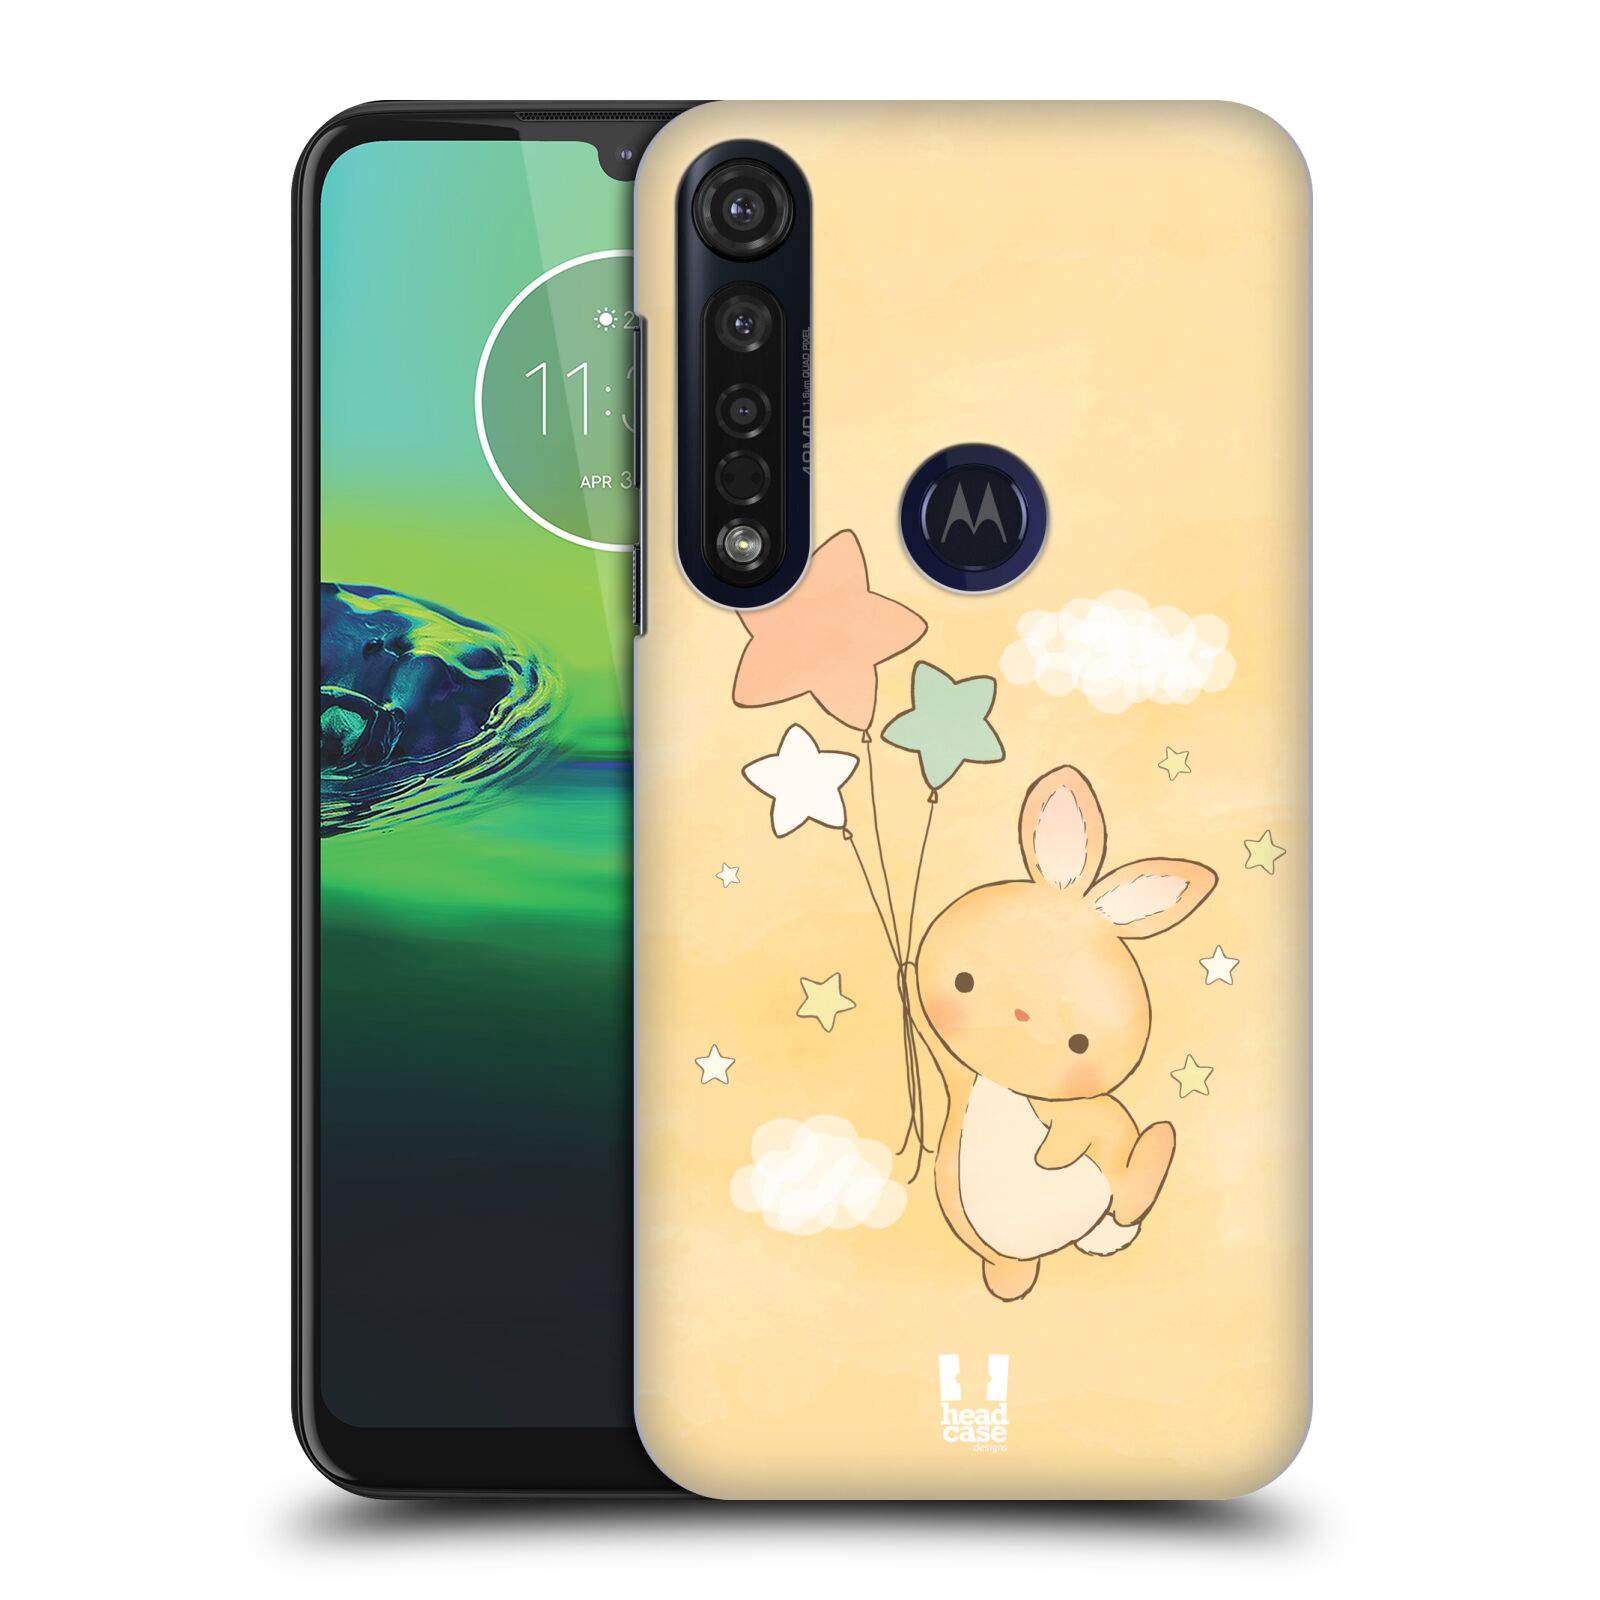 Pouzdro na mobil Motorola Moto G8 PLUS - HEAD CASE - vzor králíček a hvězdy žlutá